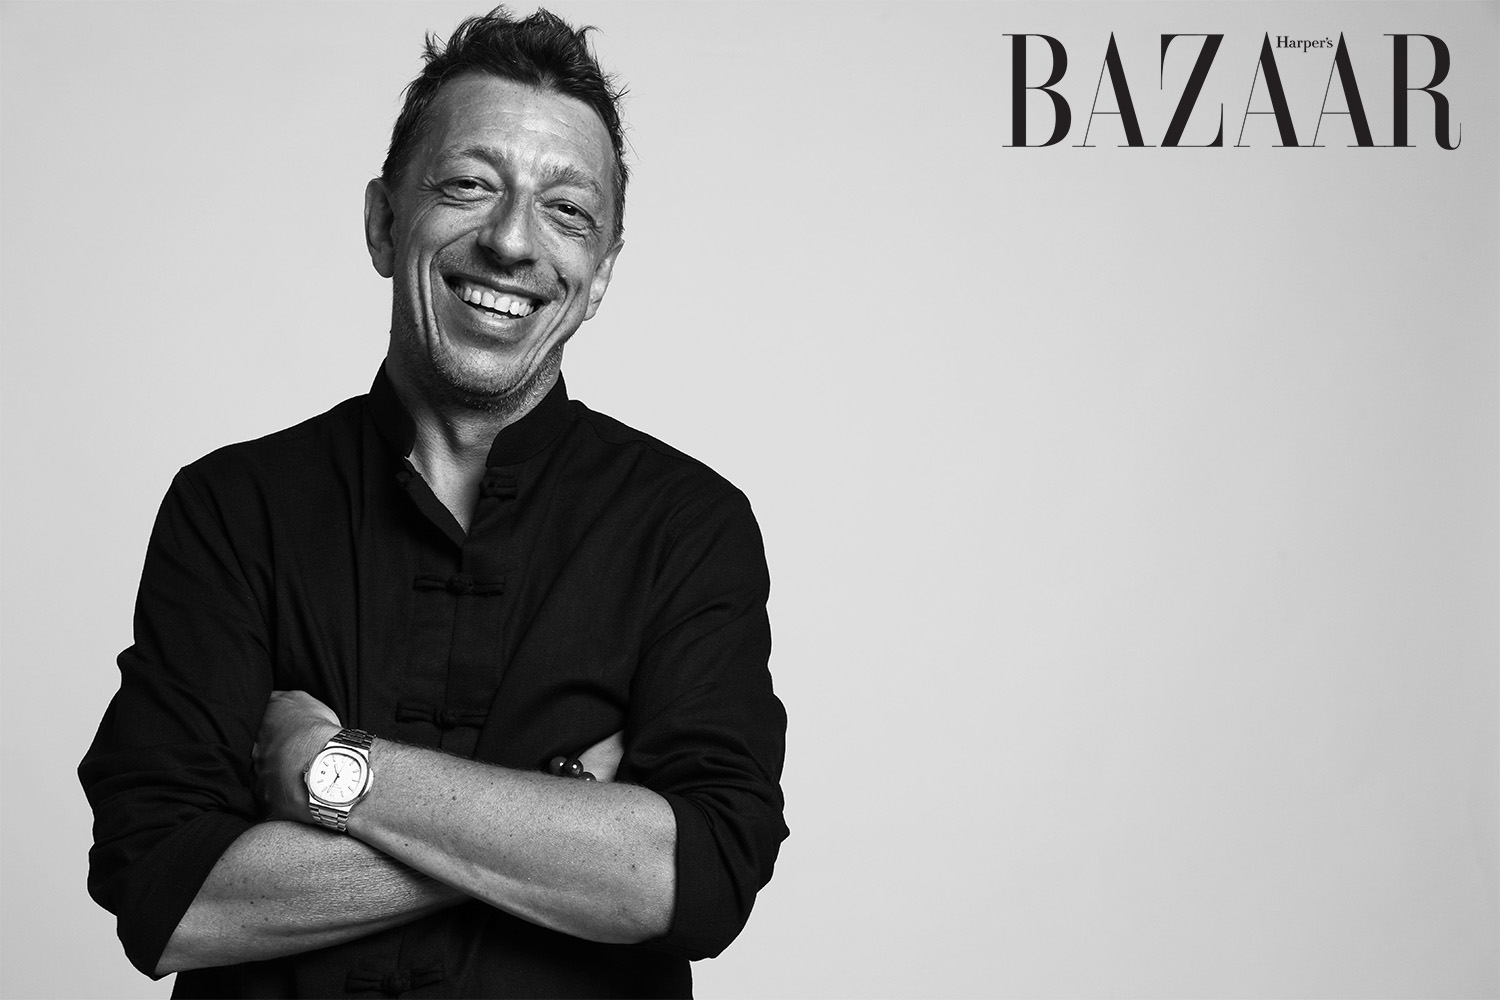 Harper's Bazaar_Giám đốc điều hành Benoit Chaigneau_02